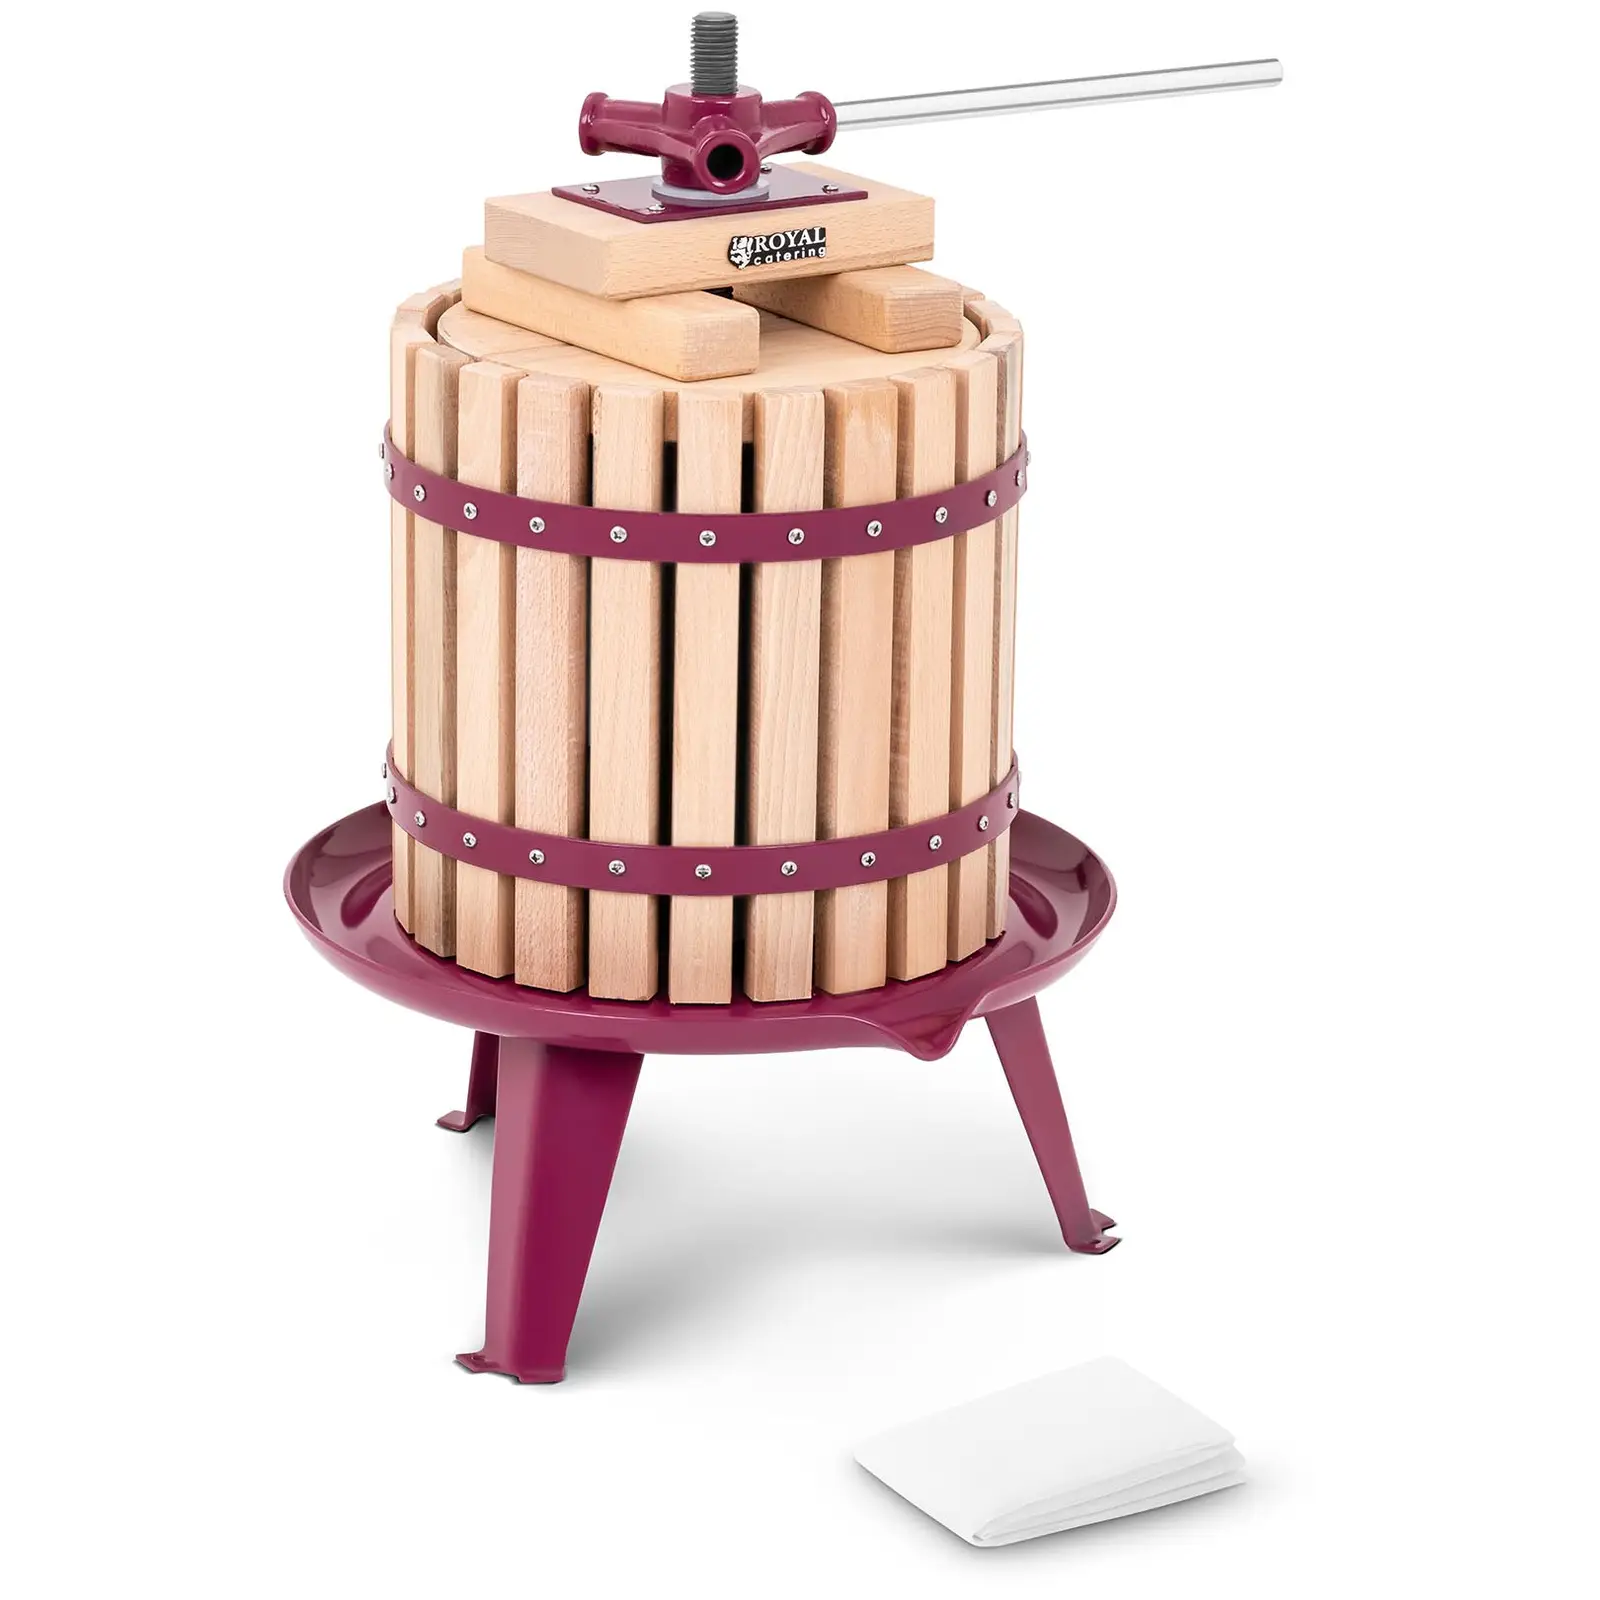 Prensa para fruta - manual - madera - 12 L - incluye bloque de madera, placa de presión y paño de prensado